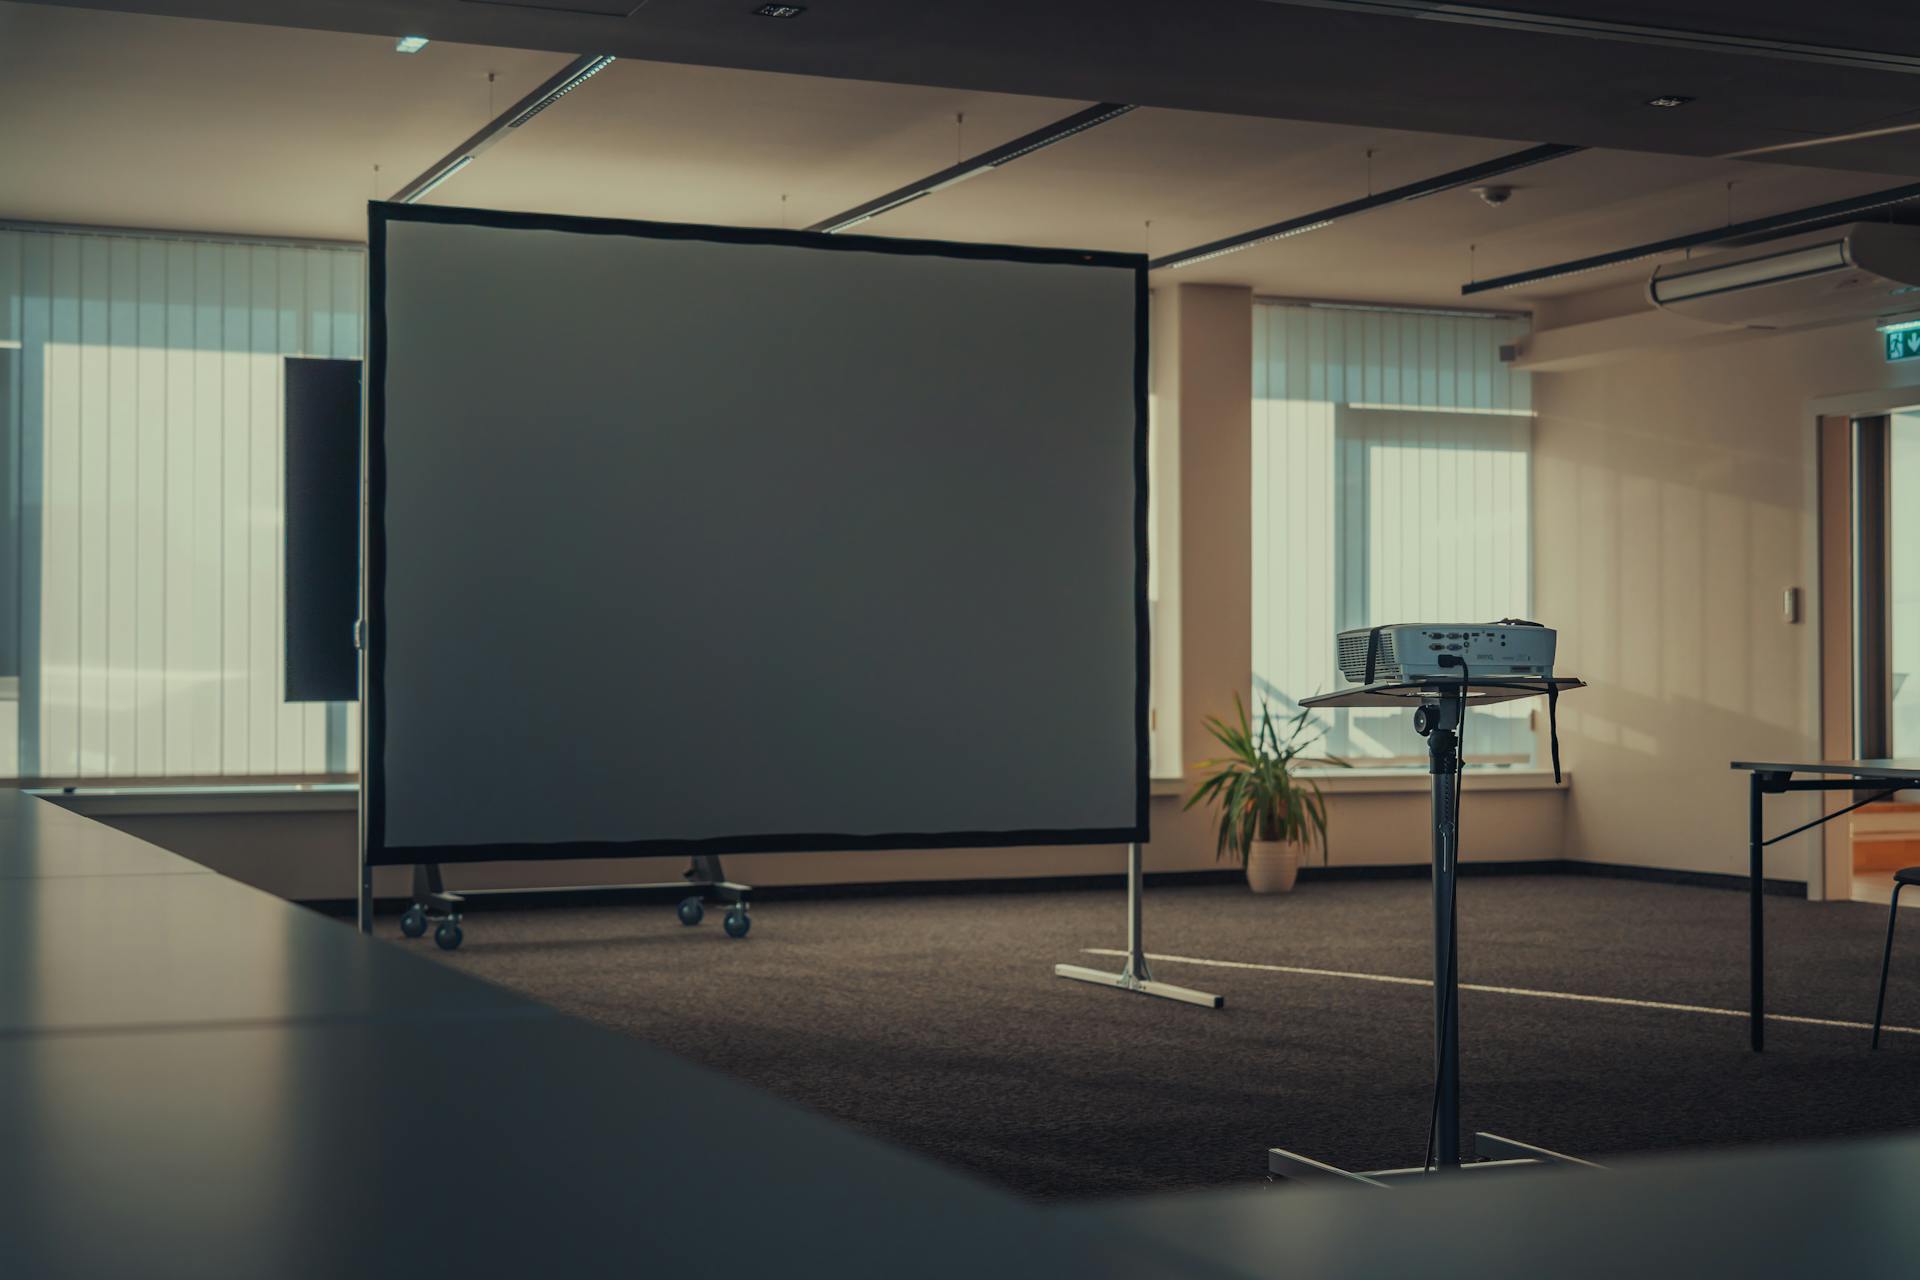 A projector screen | Source: Pexels